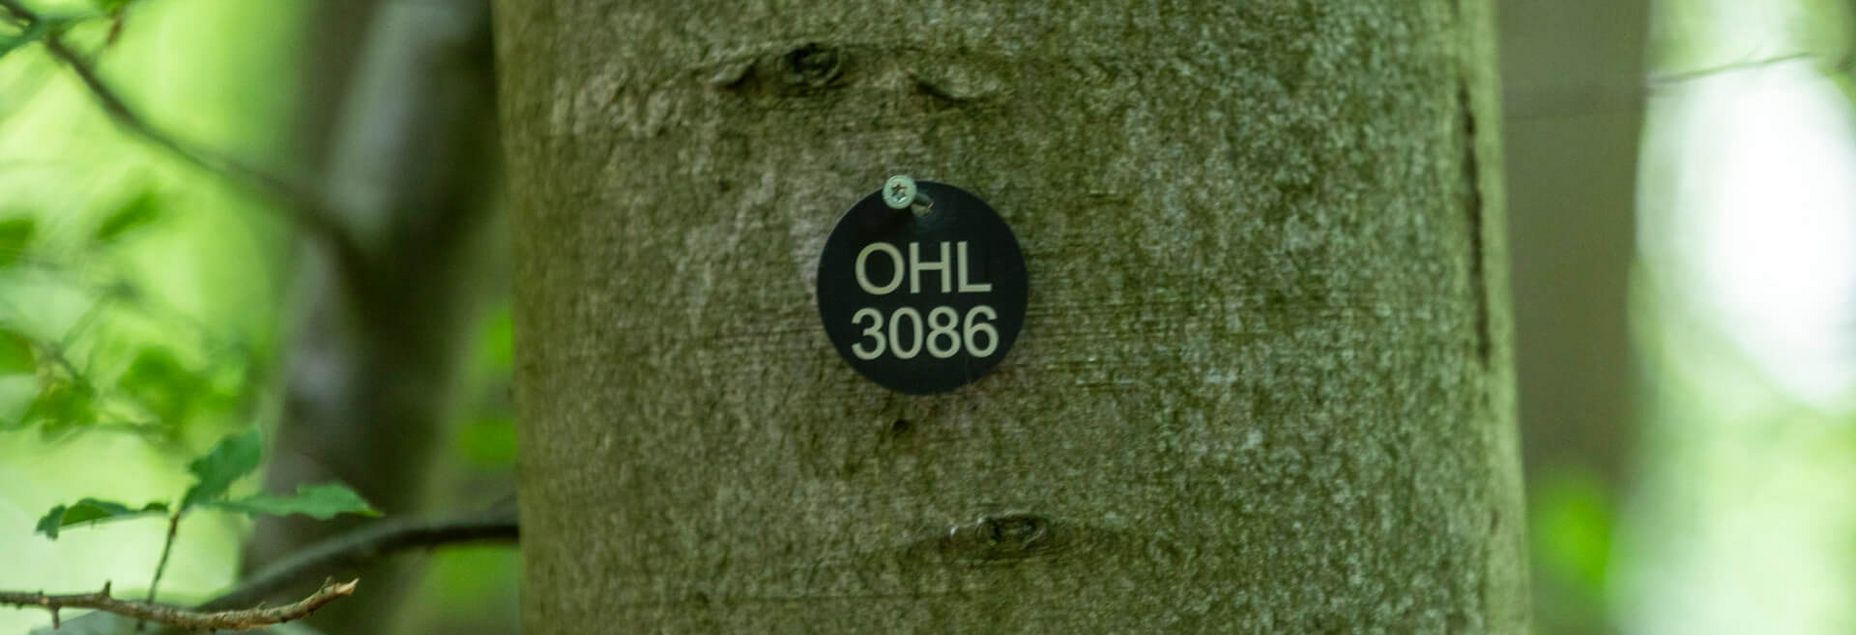 FriedWald-Onlineshop OHL 3086